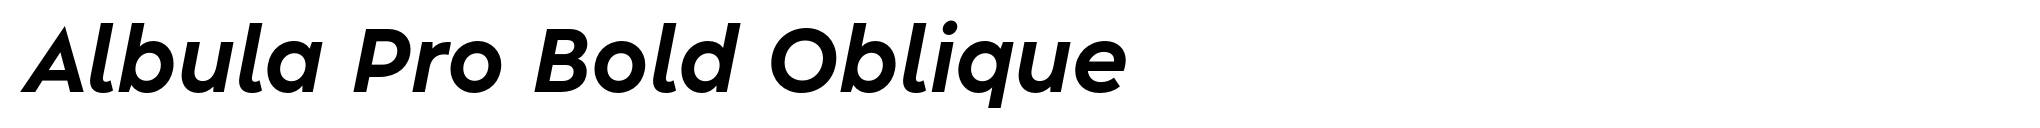 Albula Pro Bold Oblique image